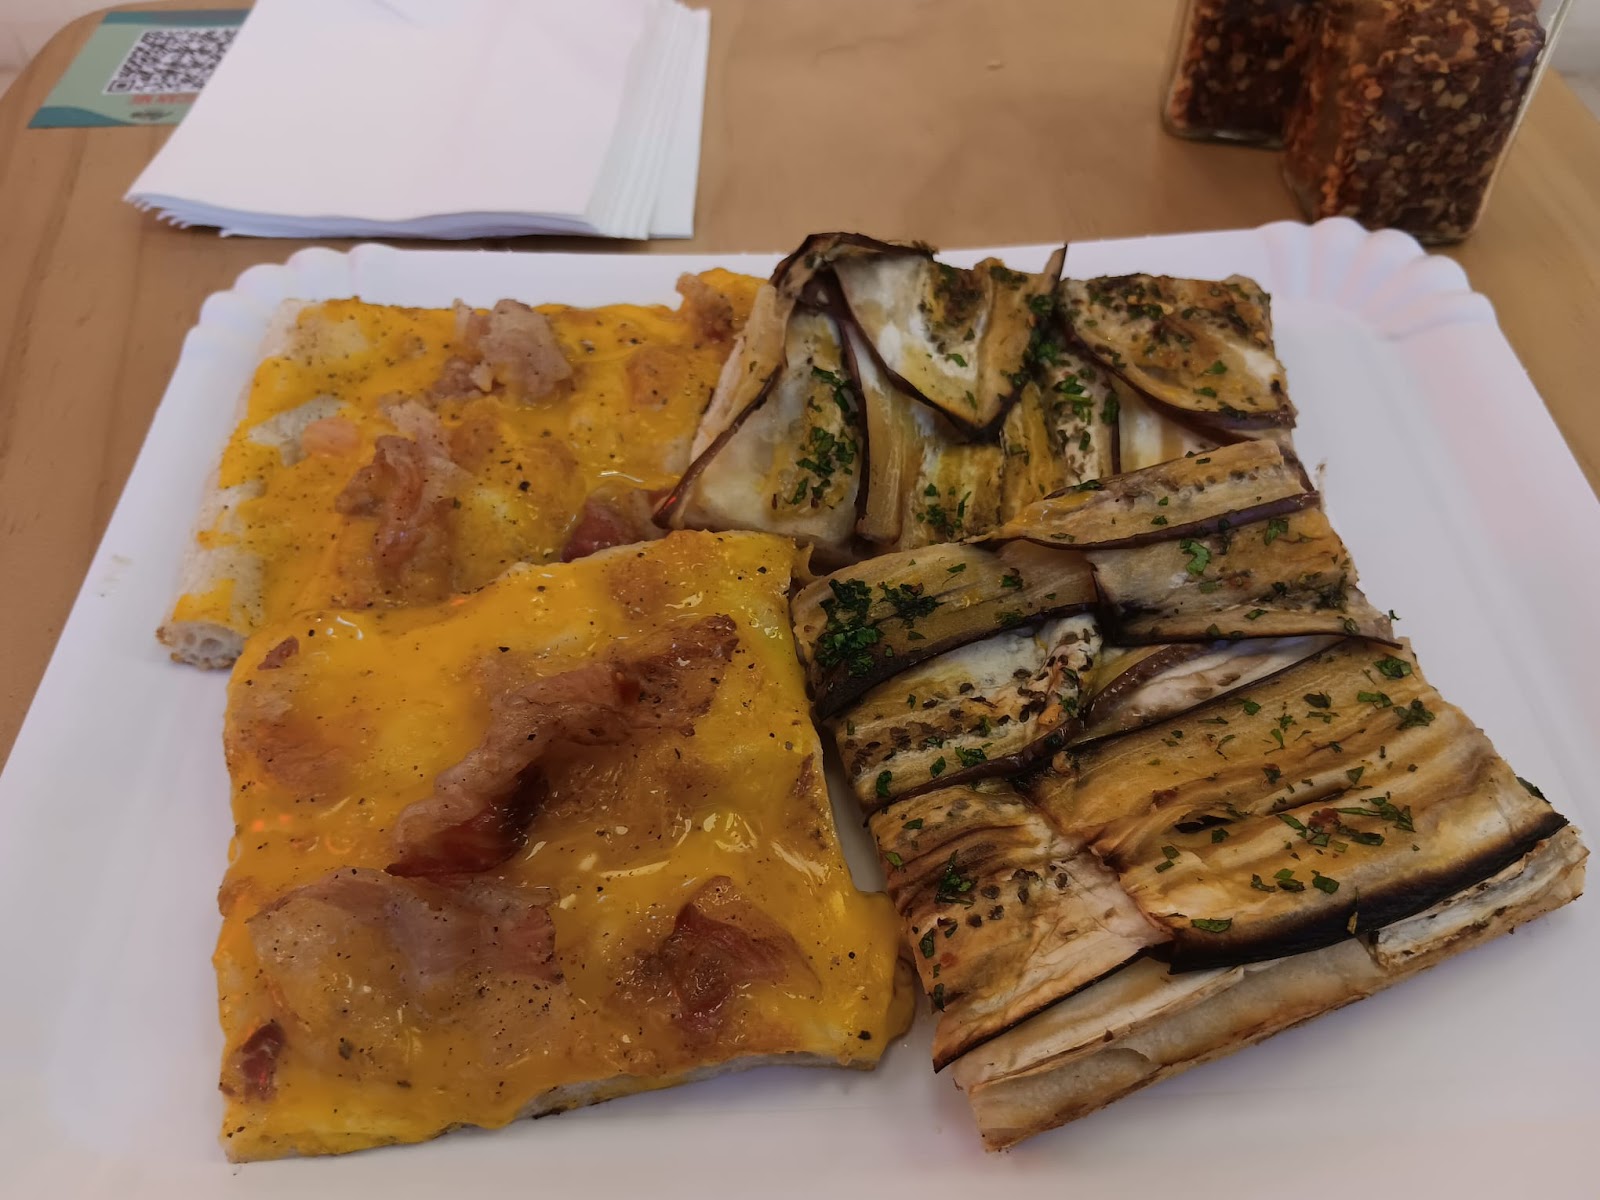 carbonara and eggplant slices at Alice Pizza Hong Kong